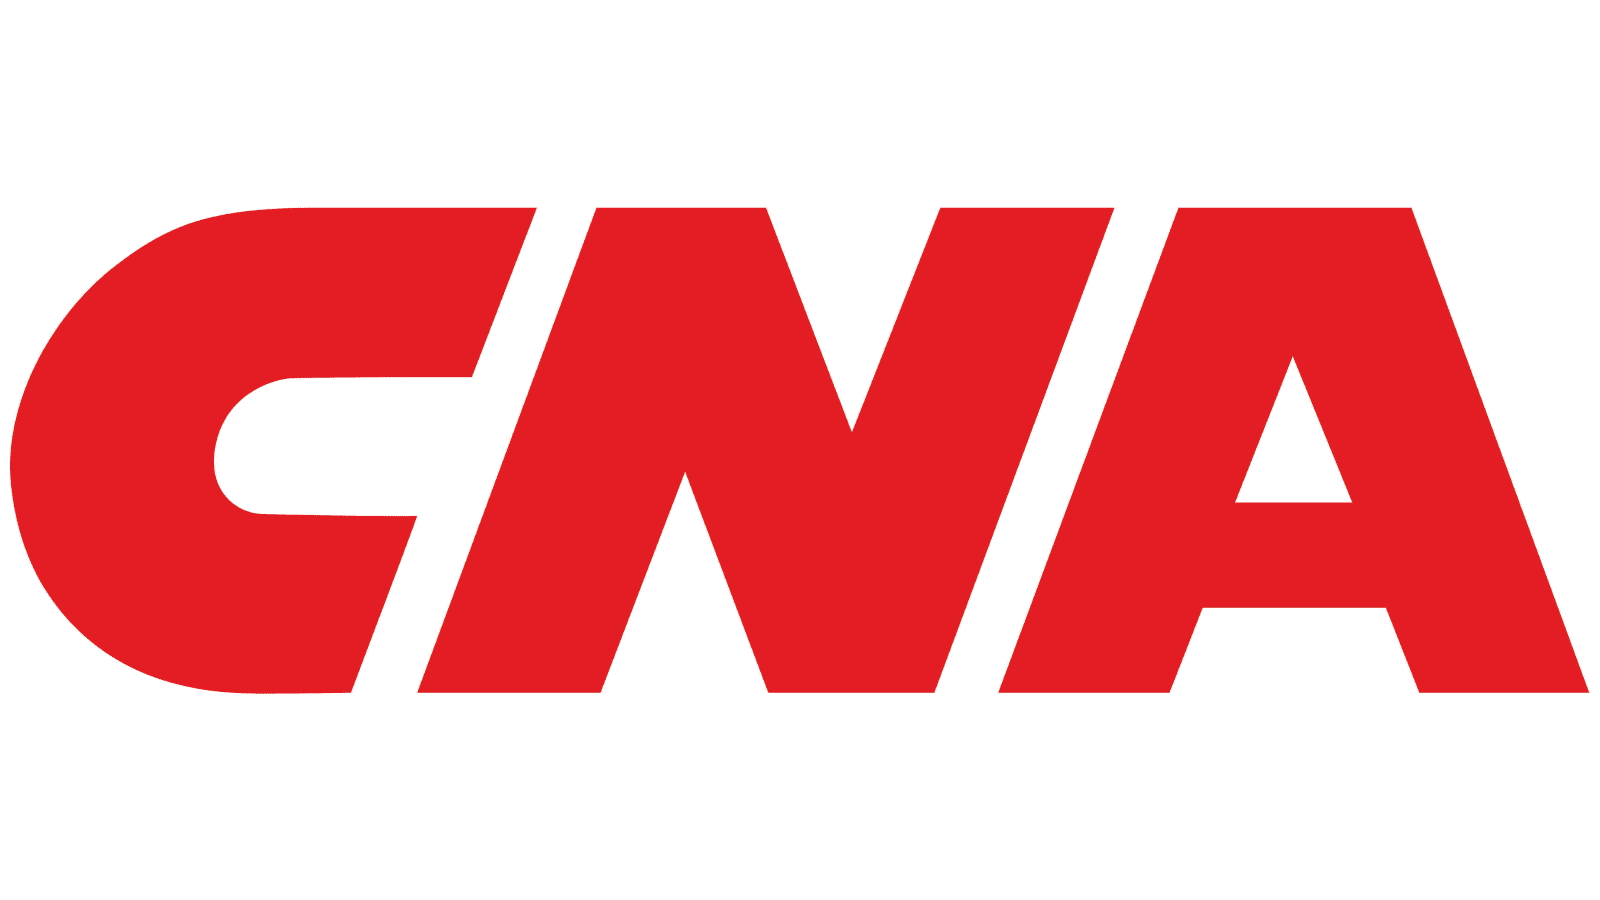 Cna emblem